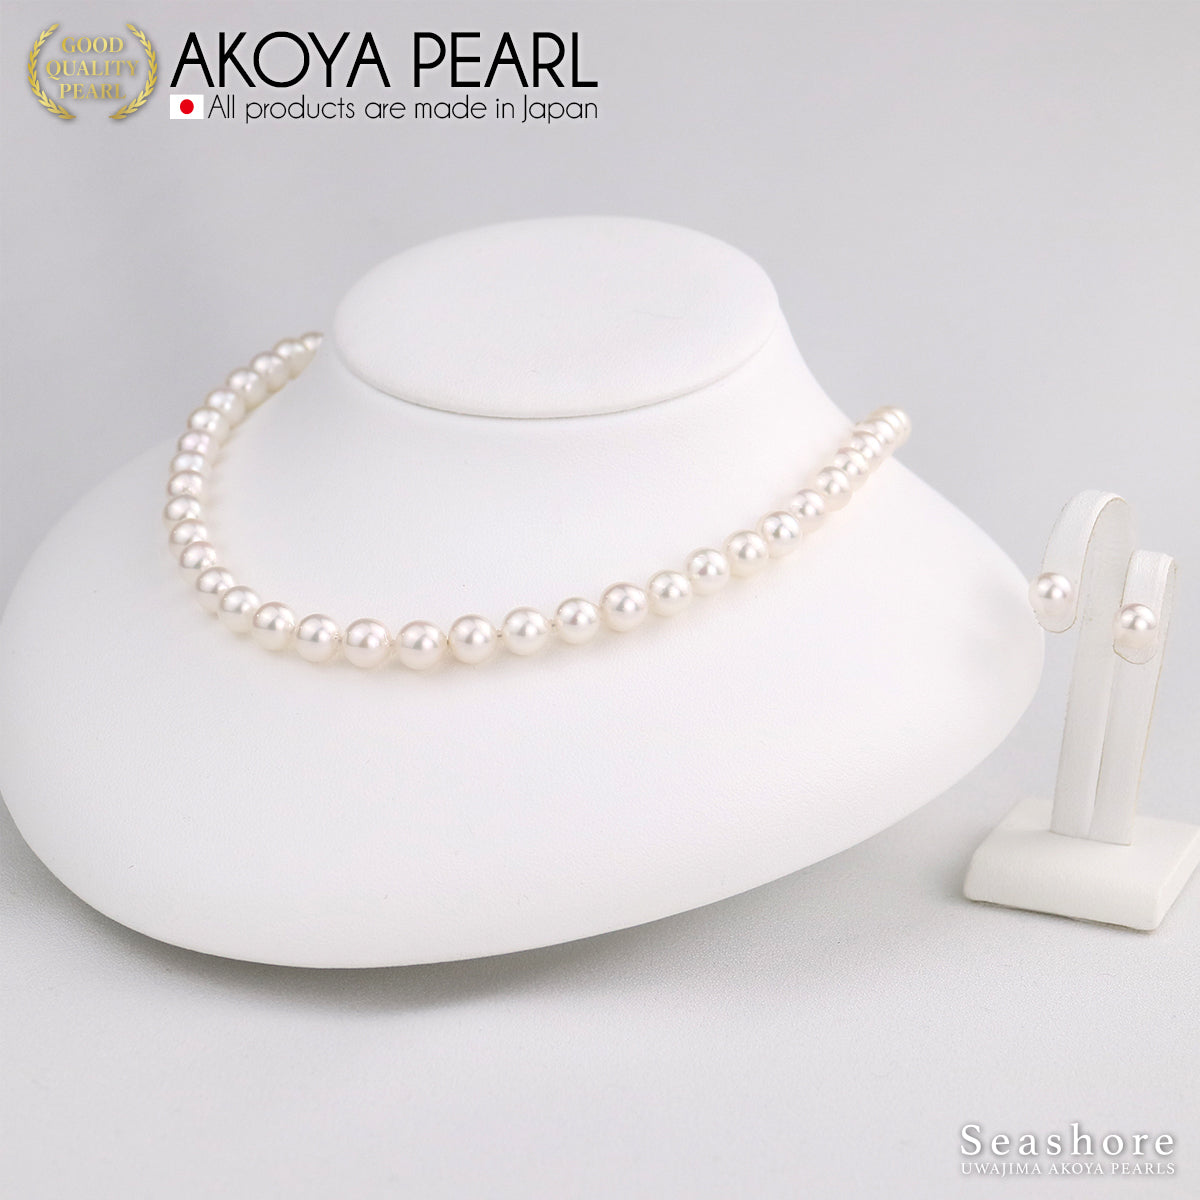 Akoya 珍珠正装项链 2 件套 [7.0-7.5 毫米]（含耳环）首发尺寸正装套装，带真品证书和储物盒